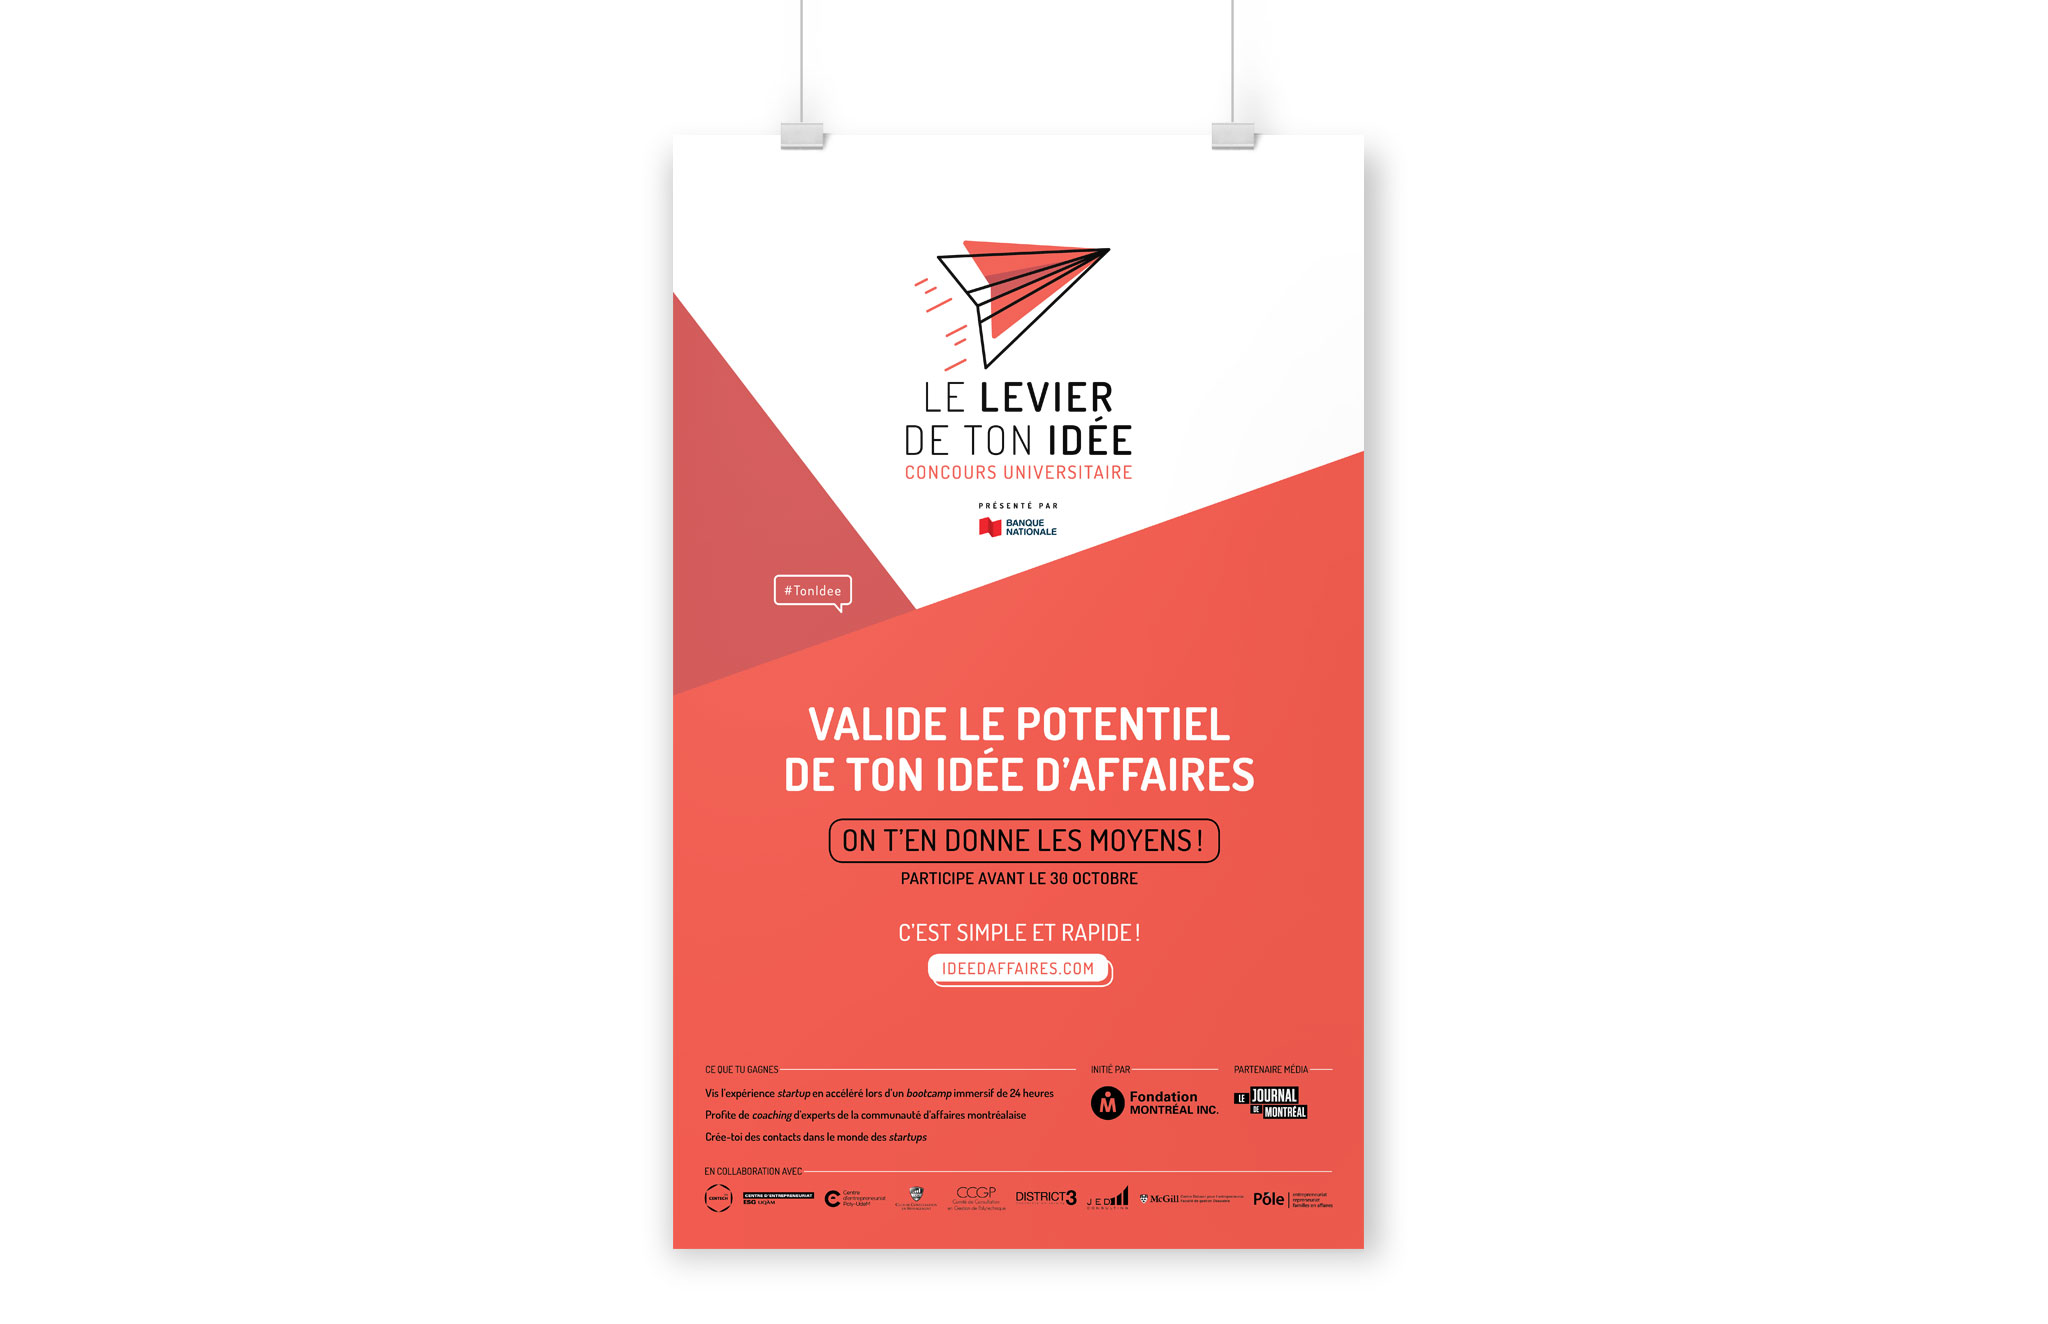 Identité visuelle du concours universitaire - Le levier de ton idée organisé par la Fondation Montréal inc.